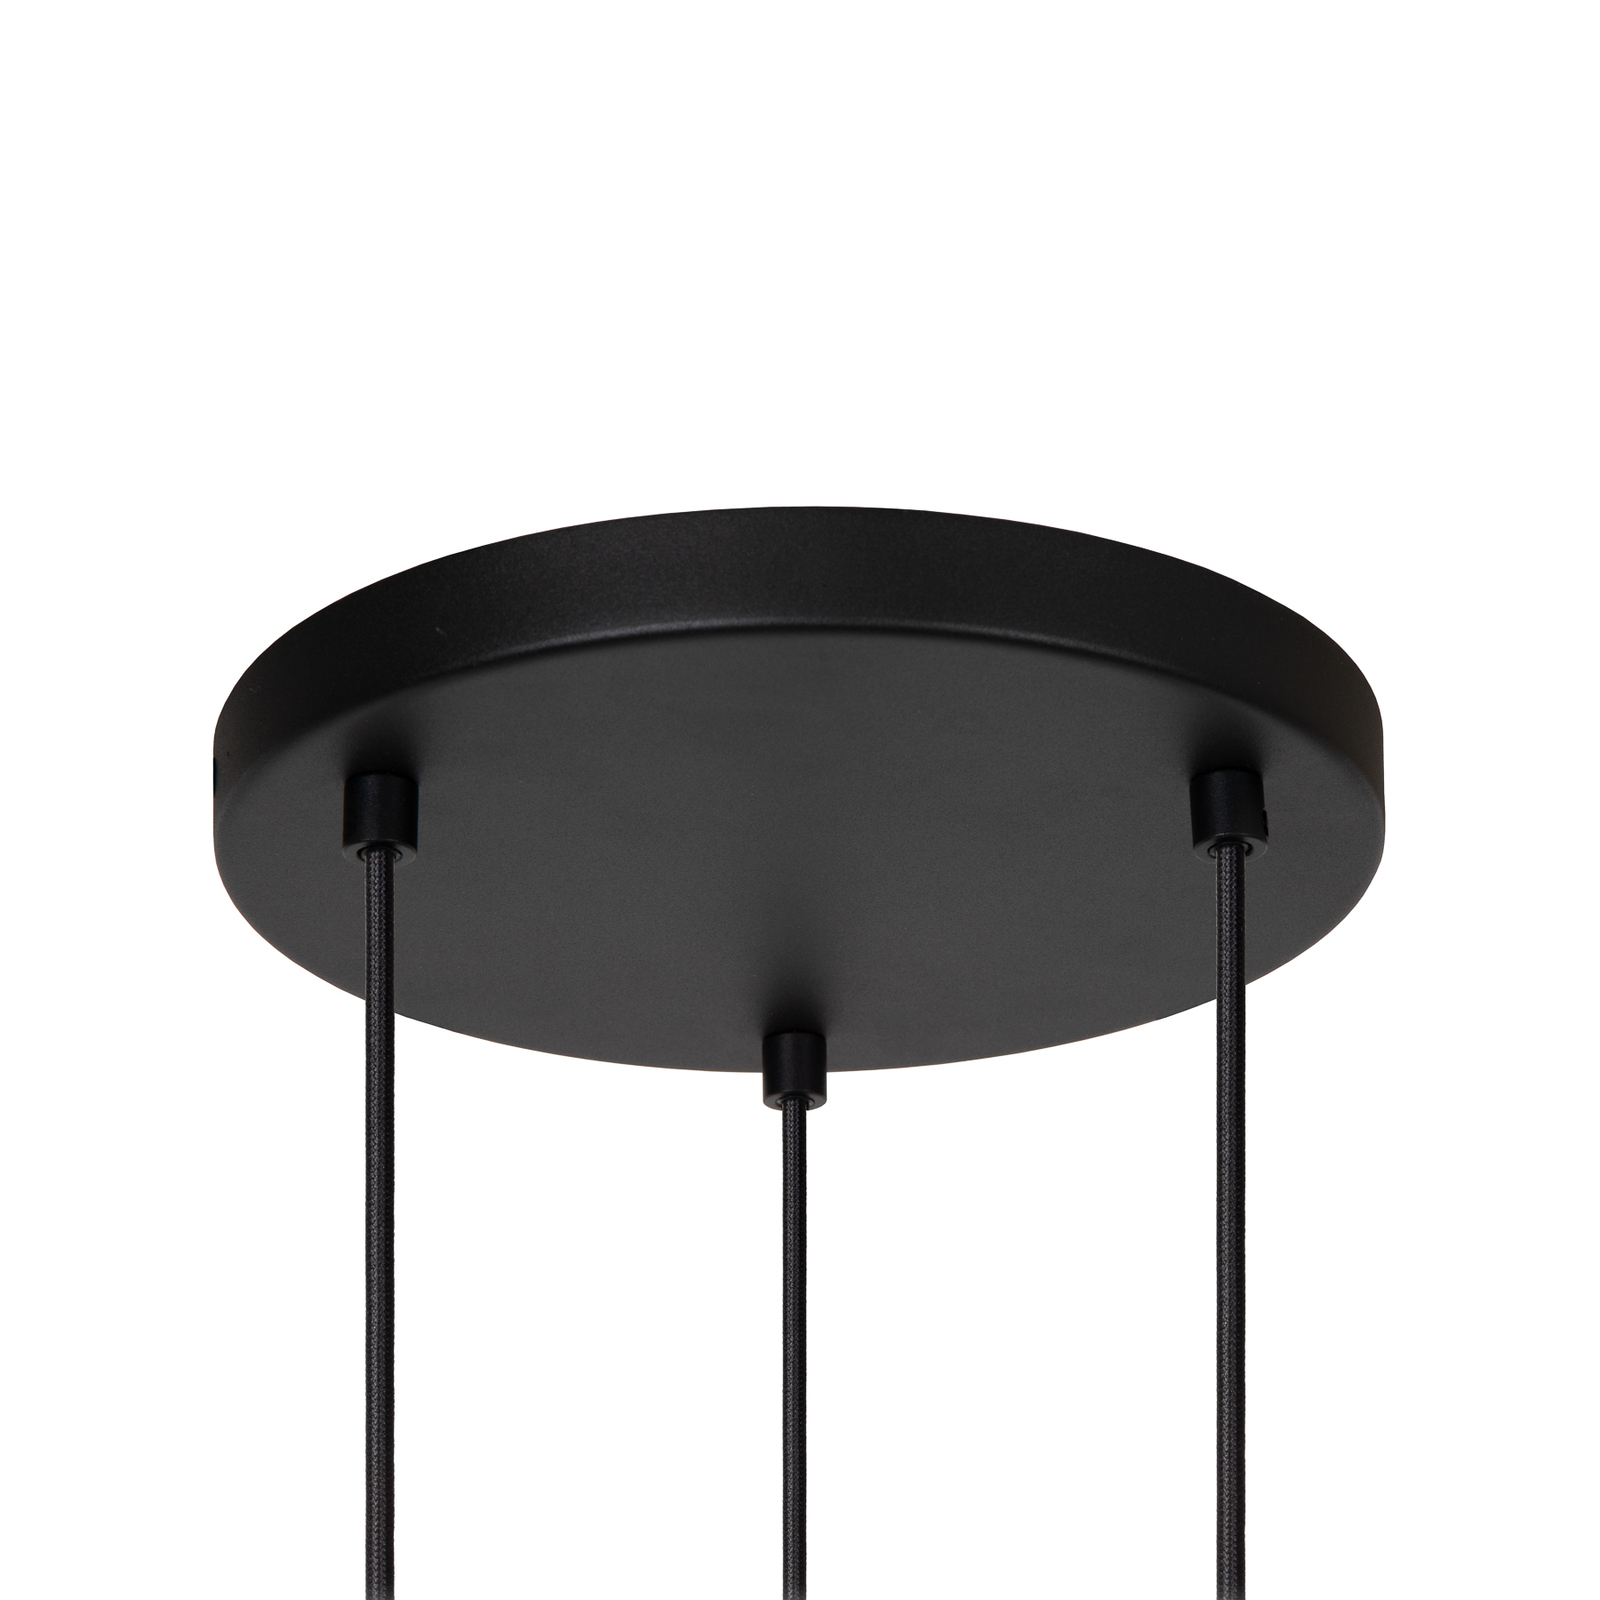 Hanglamp Evora, 3-lamps, rondel, zwart